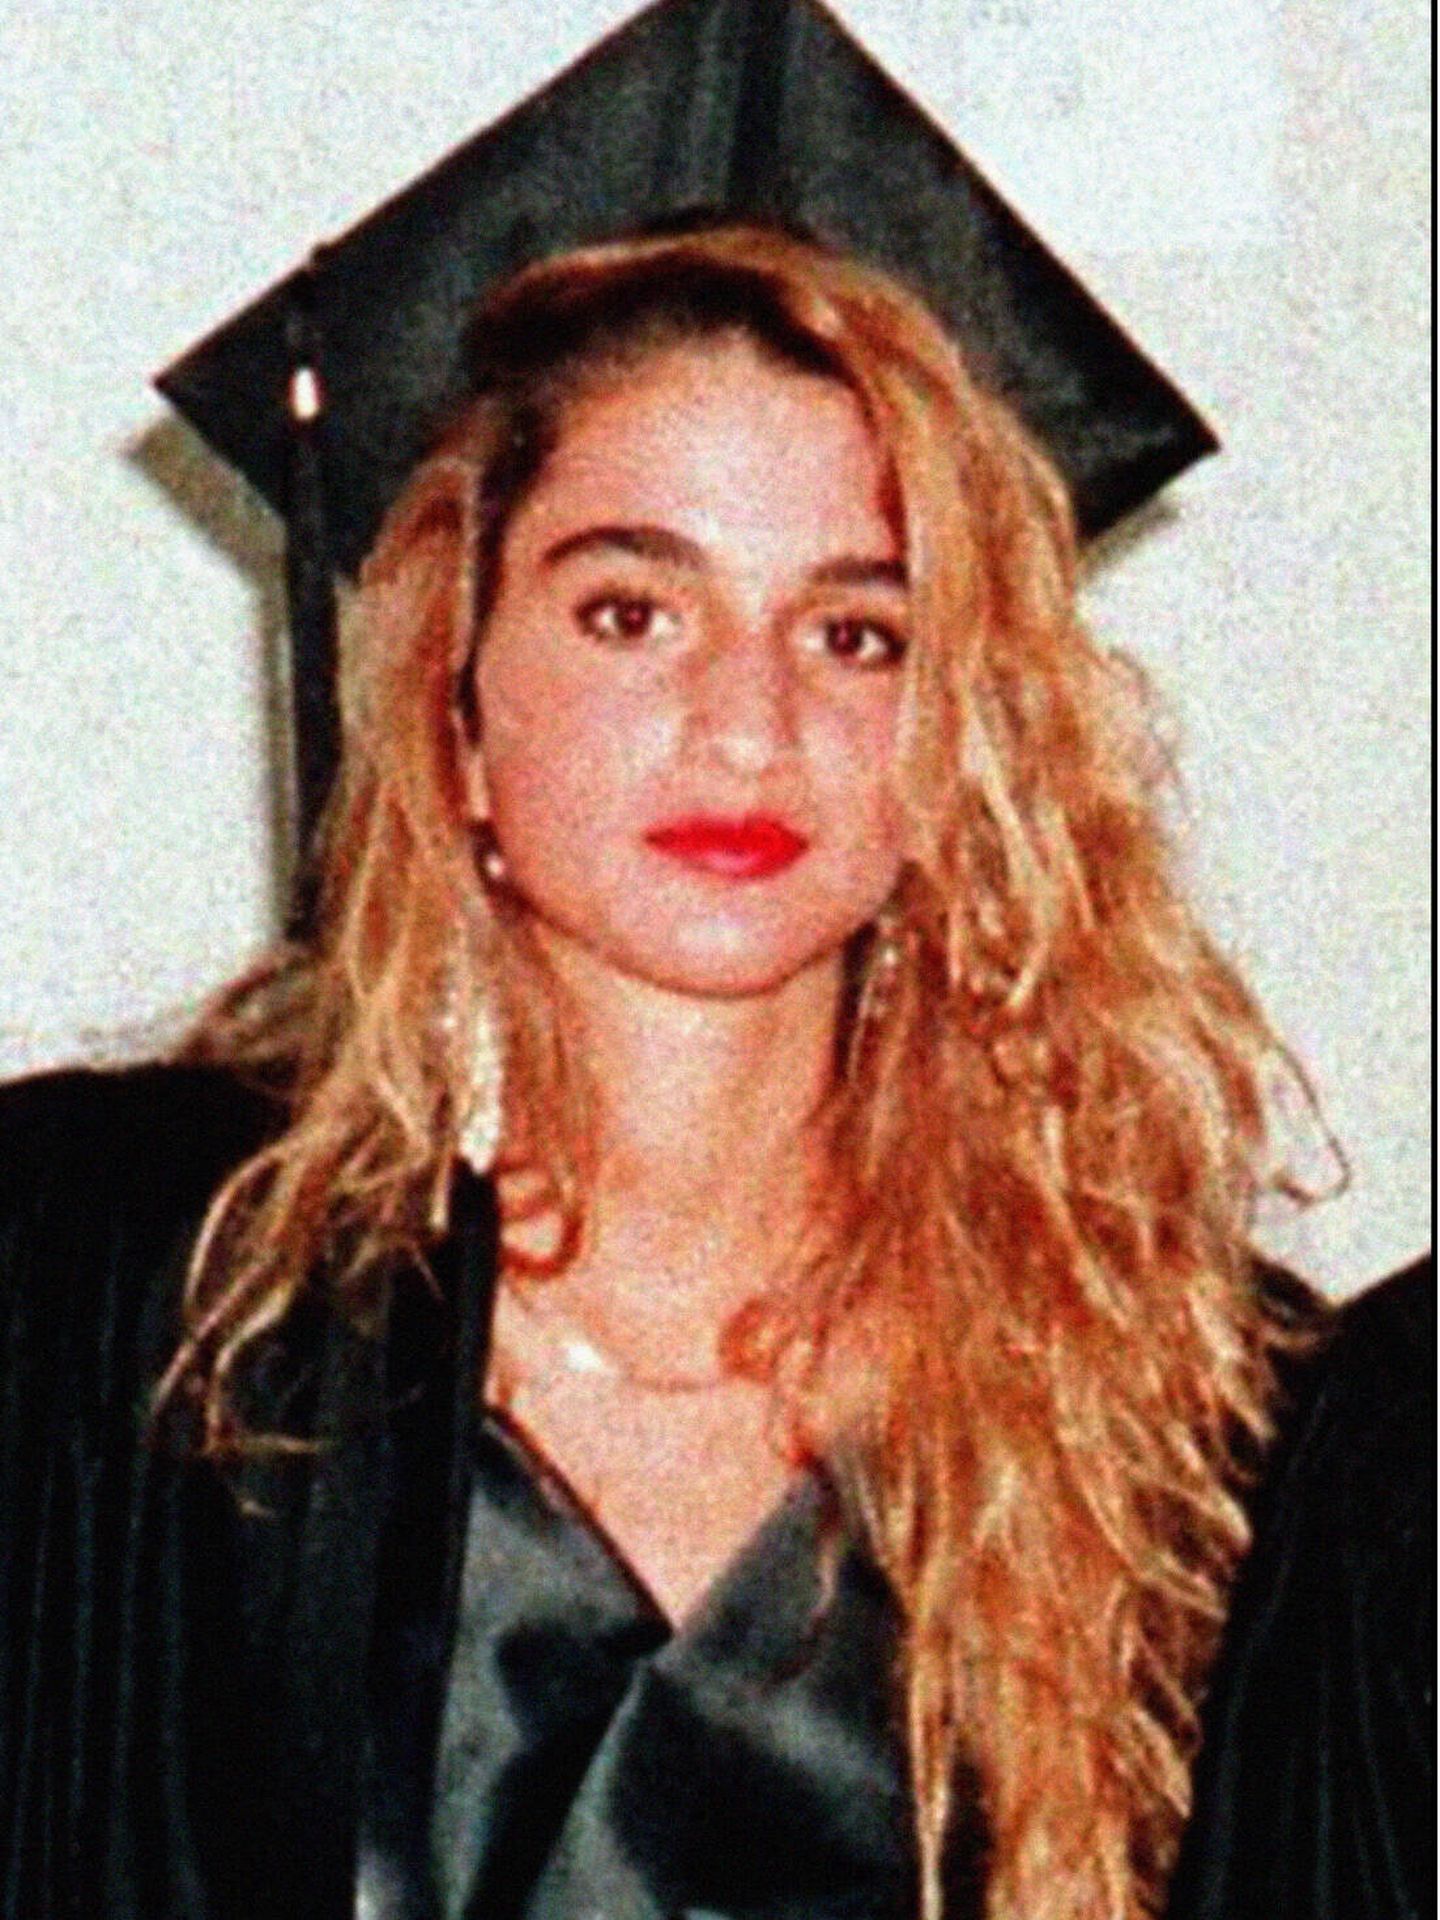 Rania de Jordania, en una foto de joven, antes de sus retoques estéticos. (Gtres)